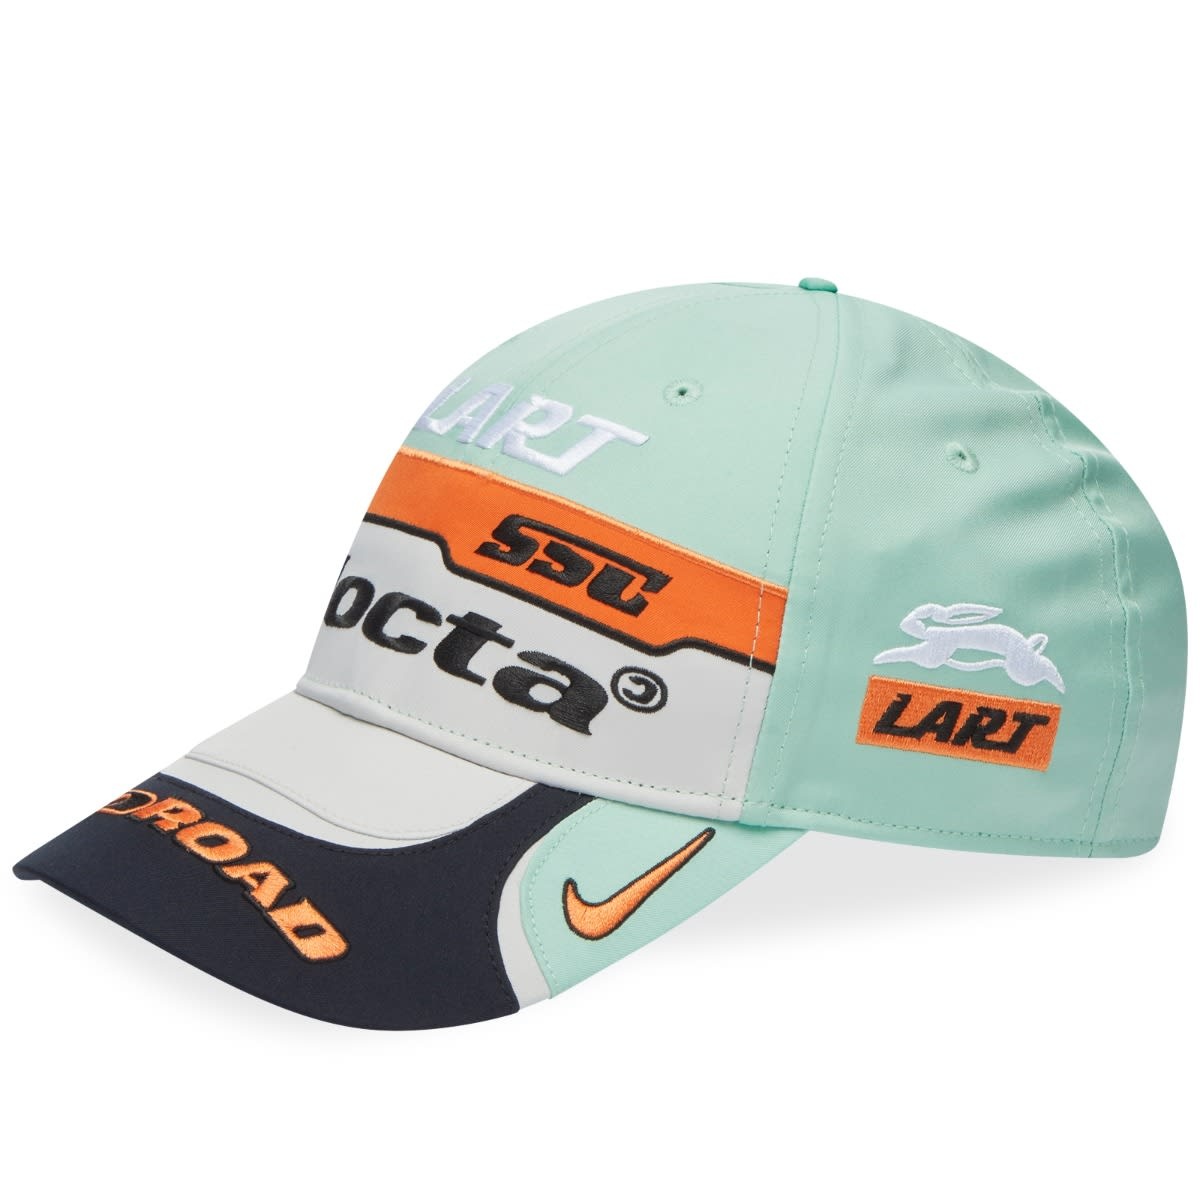 Nike x NOCTA x L'ART Racing Club Cap - 1